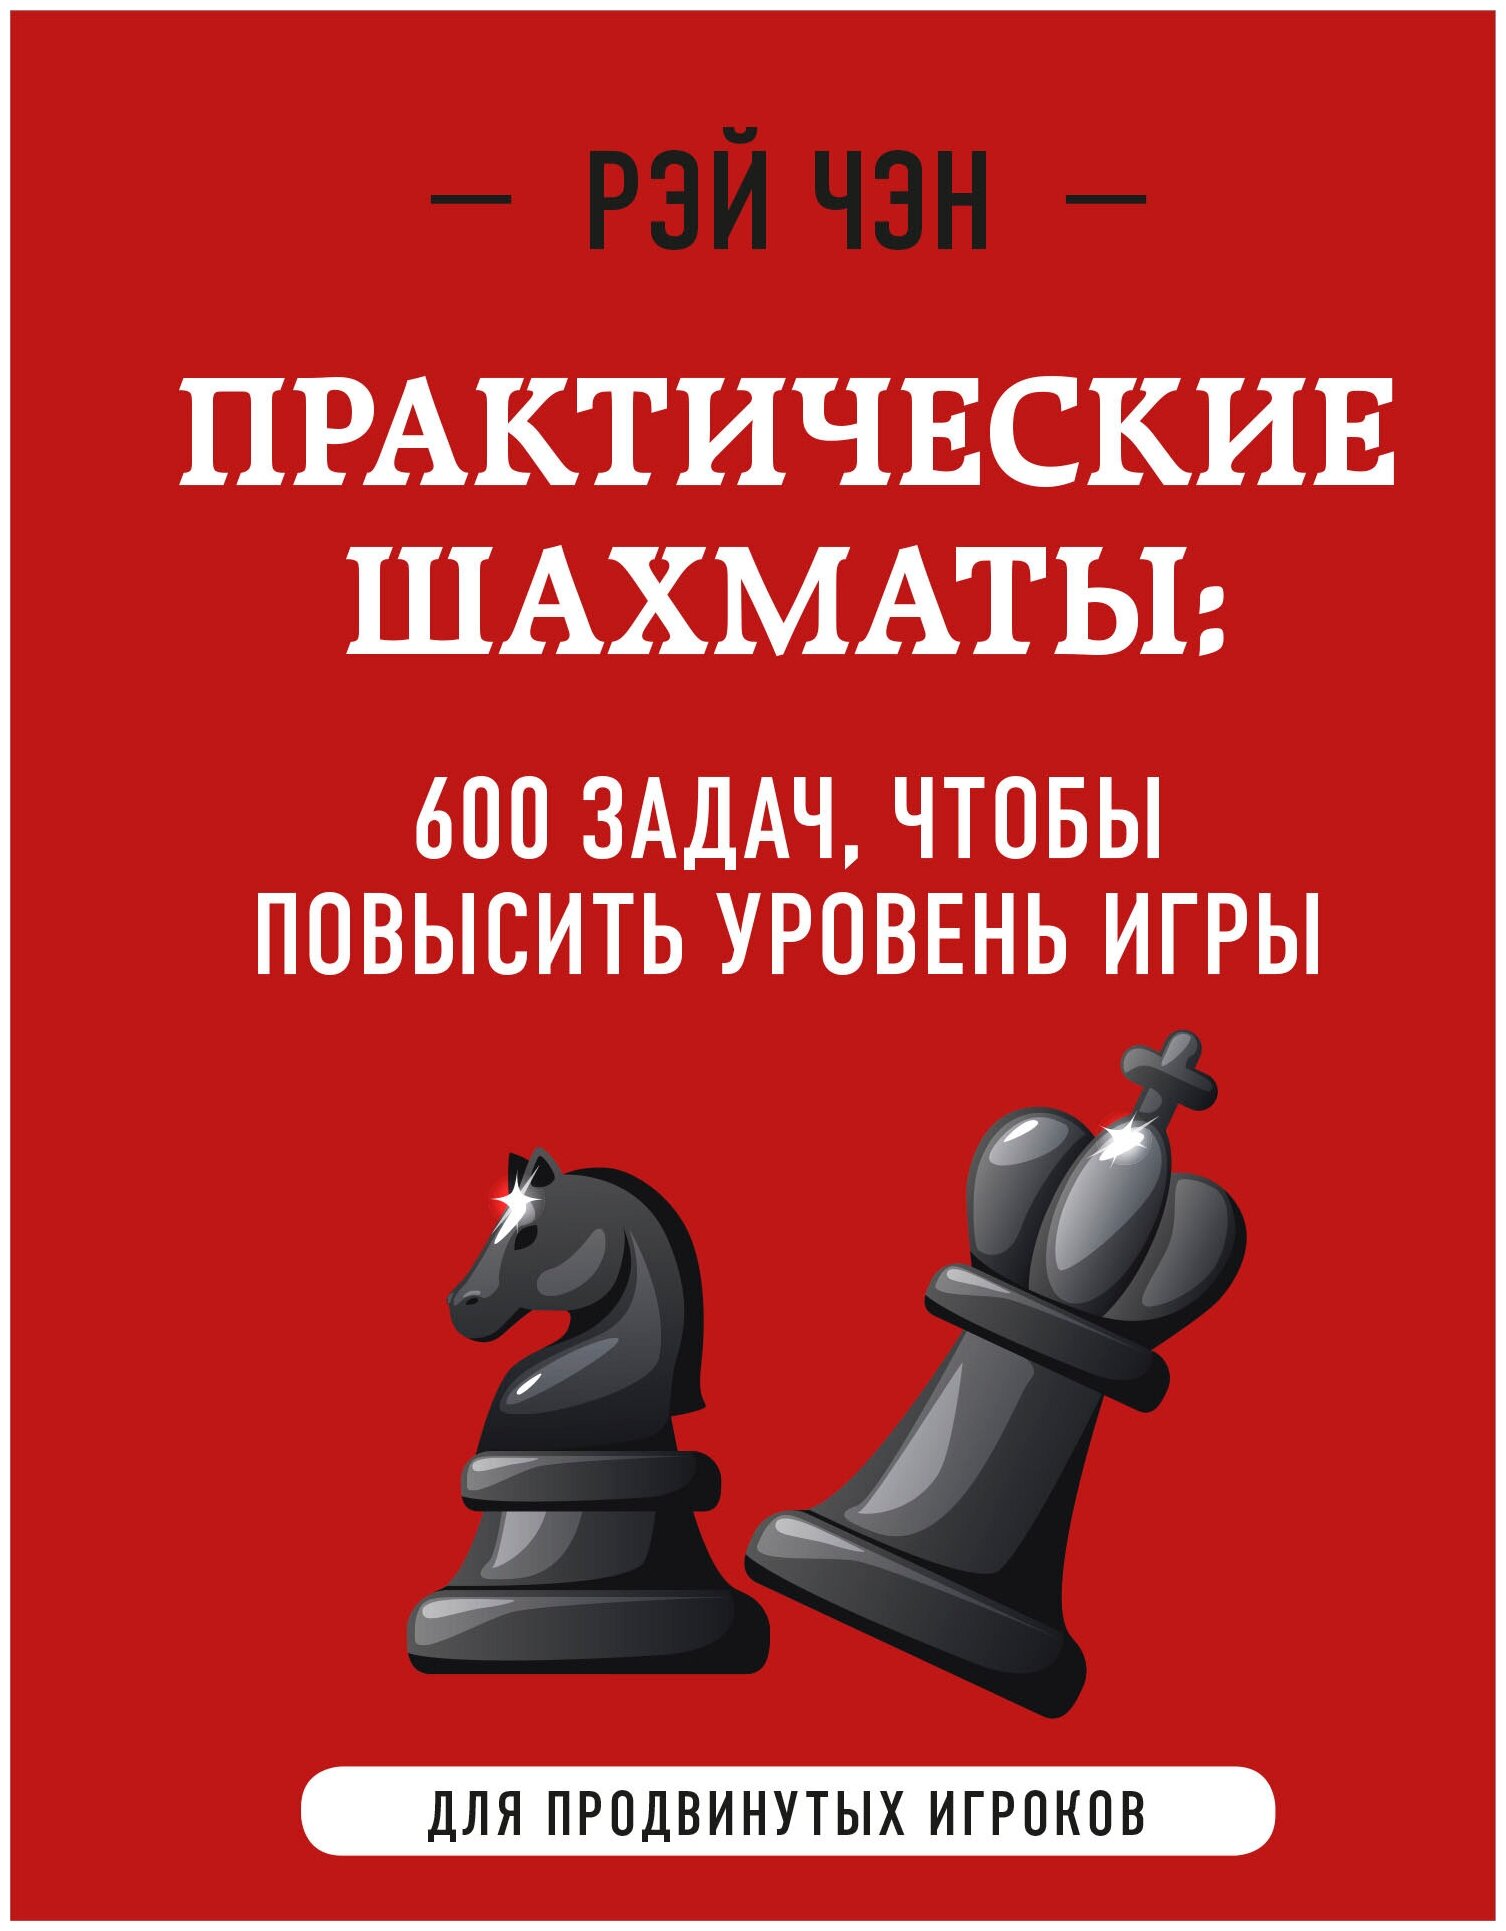 Практические шахматы: 600 задач, чтобы повысить уровень игры (2 издание) - фото №17